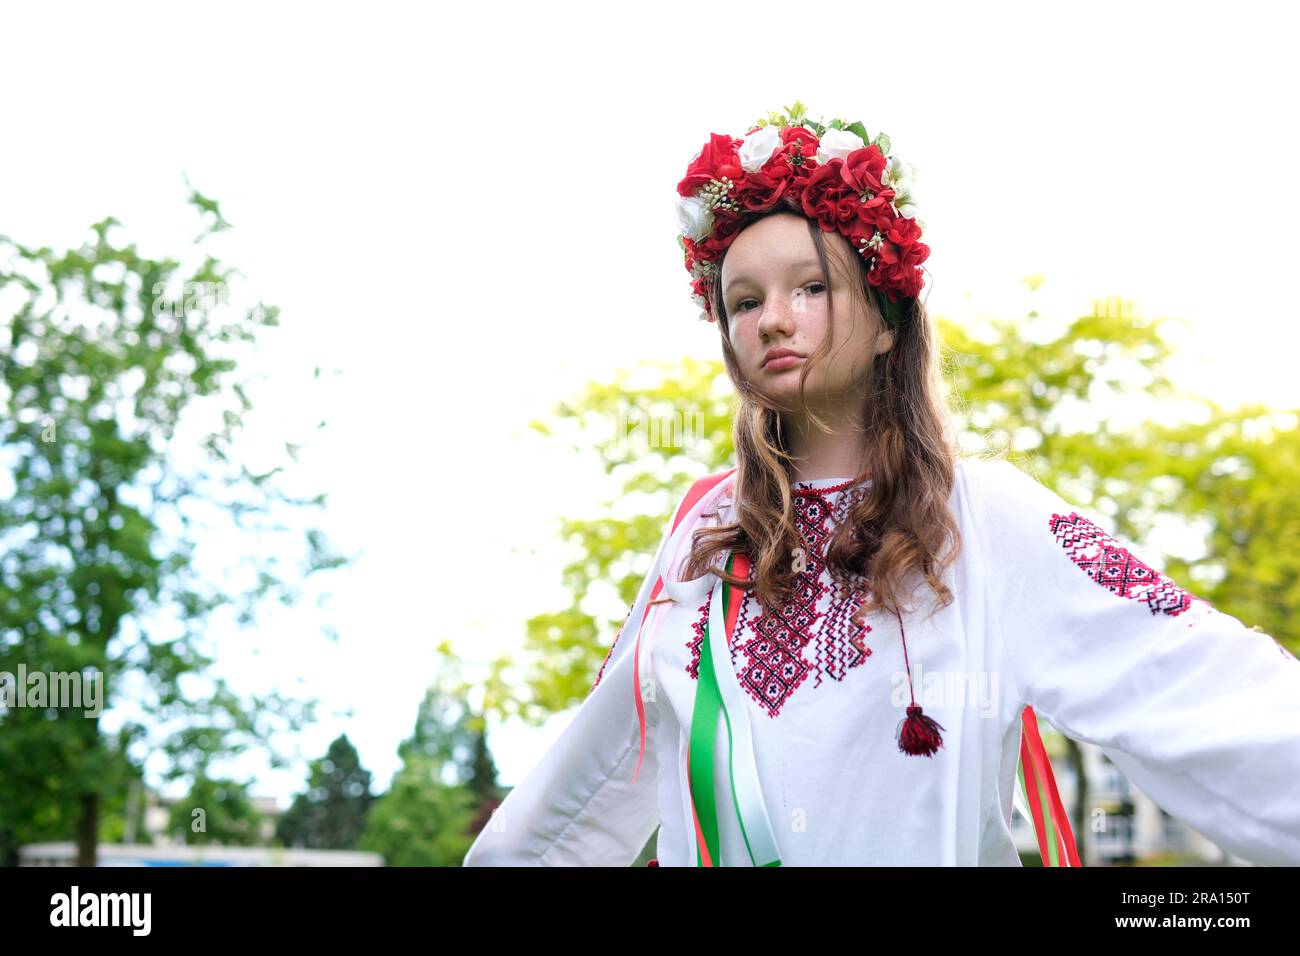 Süßes junges Mädchen, Teenager, ukrainerin, in einem traditionellen Bild, wie sie ihr Haar frisiert. Der Wind weht und entwickelt ihre Locken wunderschöner Kranz mit vielen Blumen Bänder Natur weibliche natürliche Schönheit Leute Stockfoto